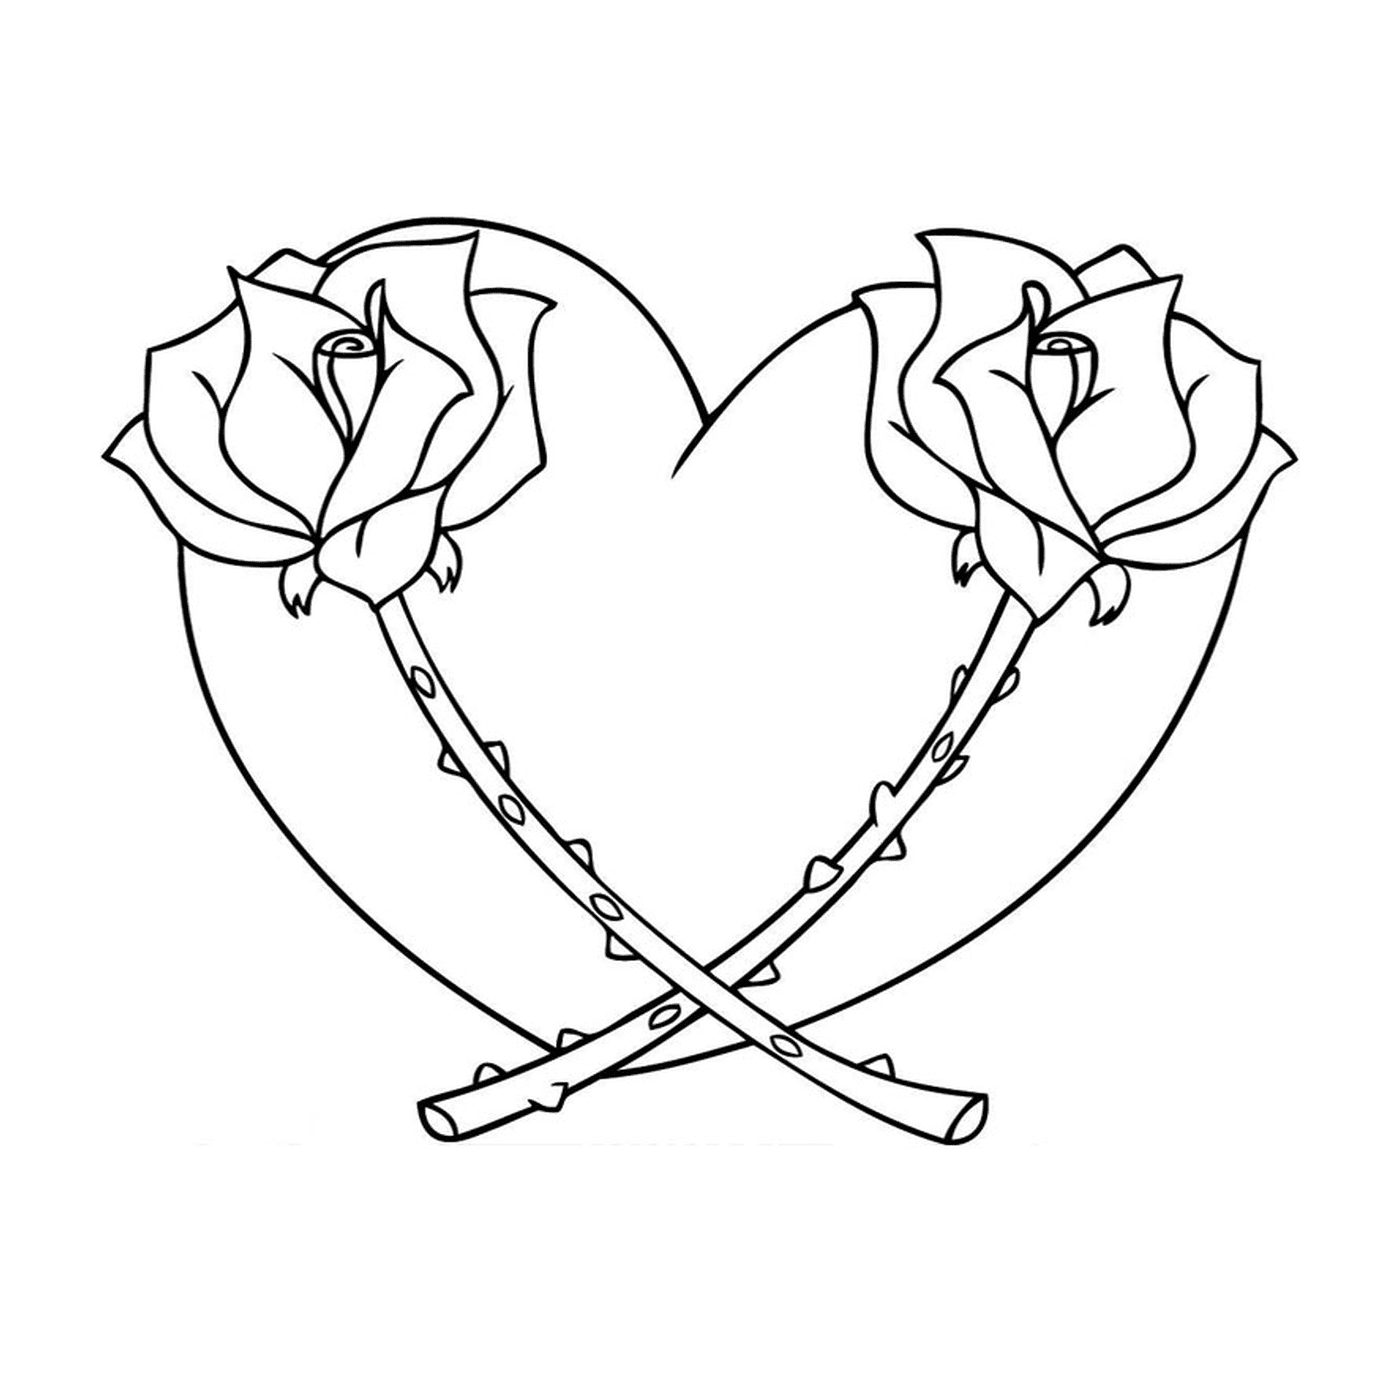  Dos rosas en forma de corazón 